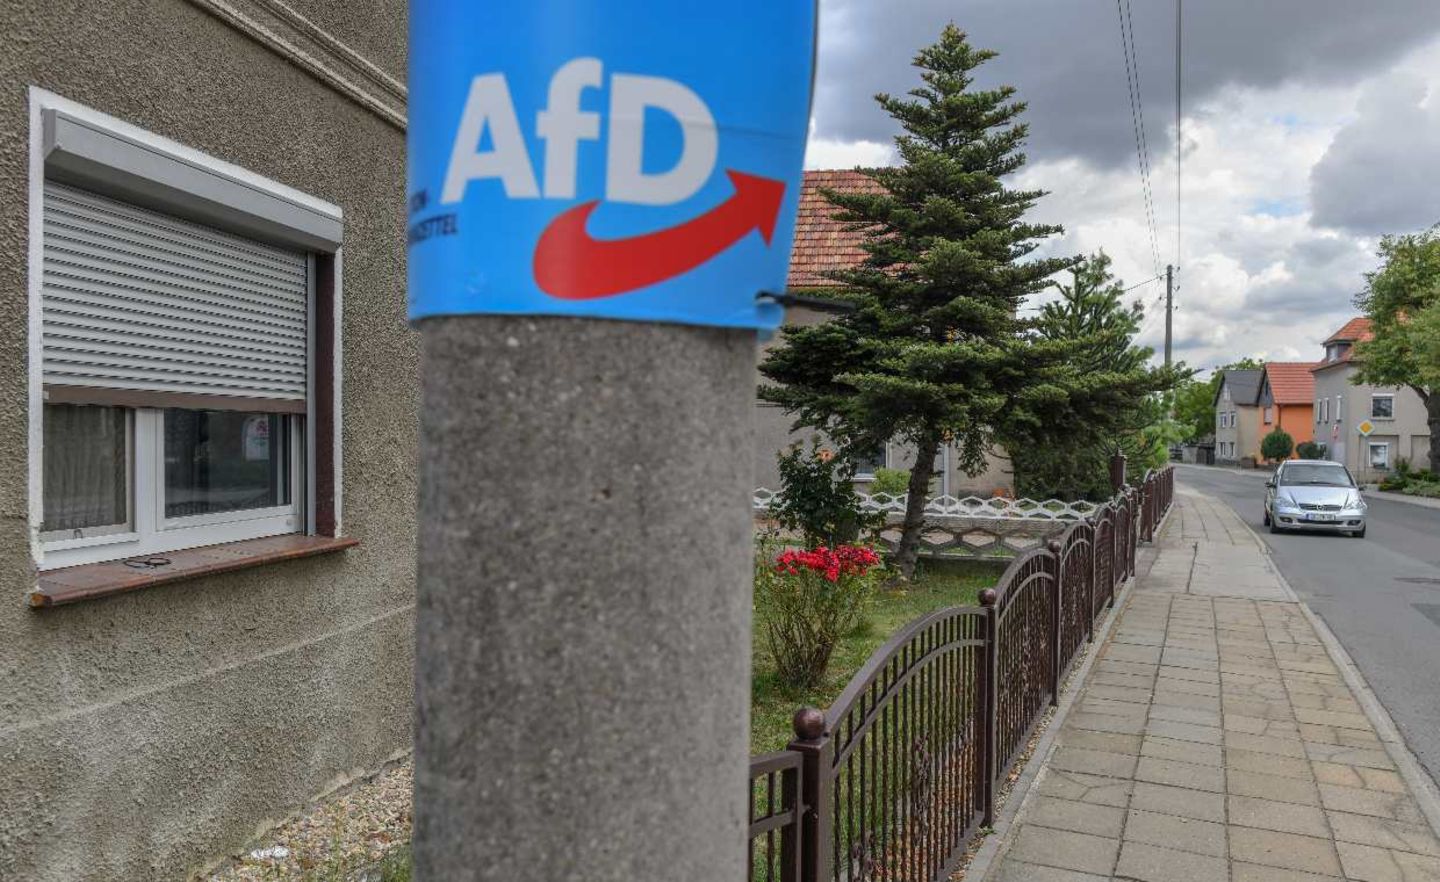 Nach der Landtagswahl in Sachsen zieht die AfD als zweitstärkste Kraft in den Landtag in Dresden ein